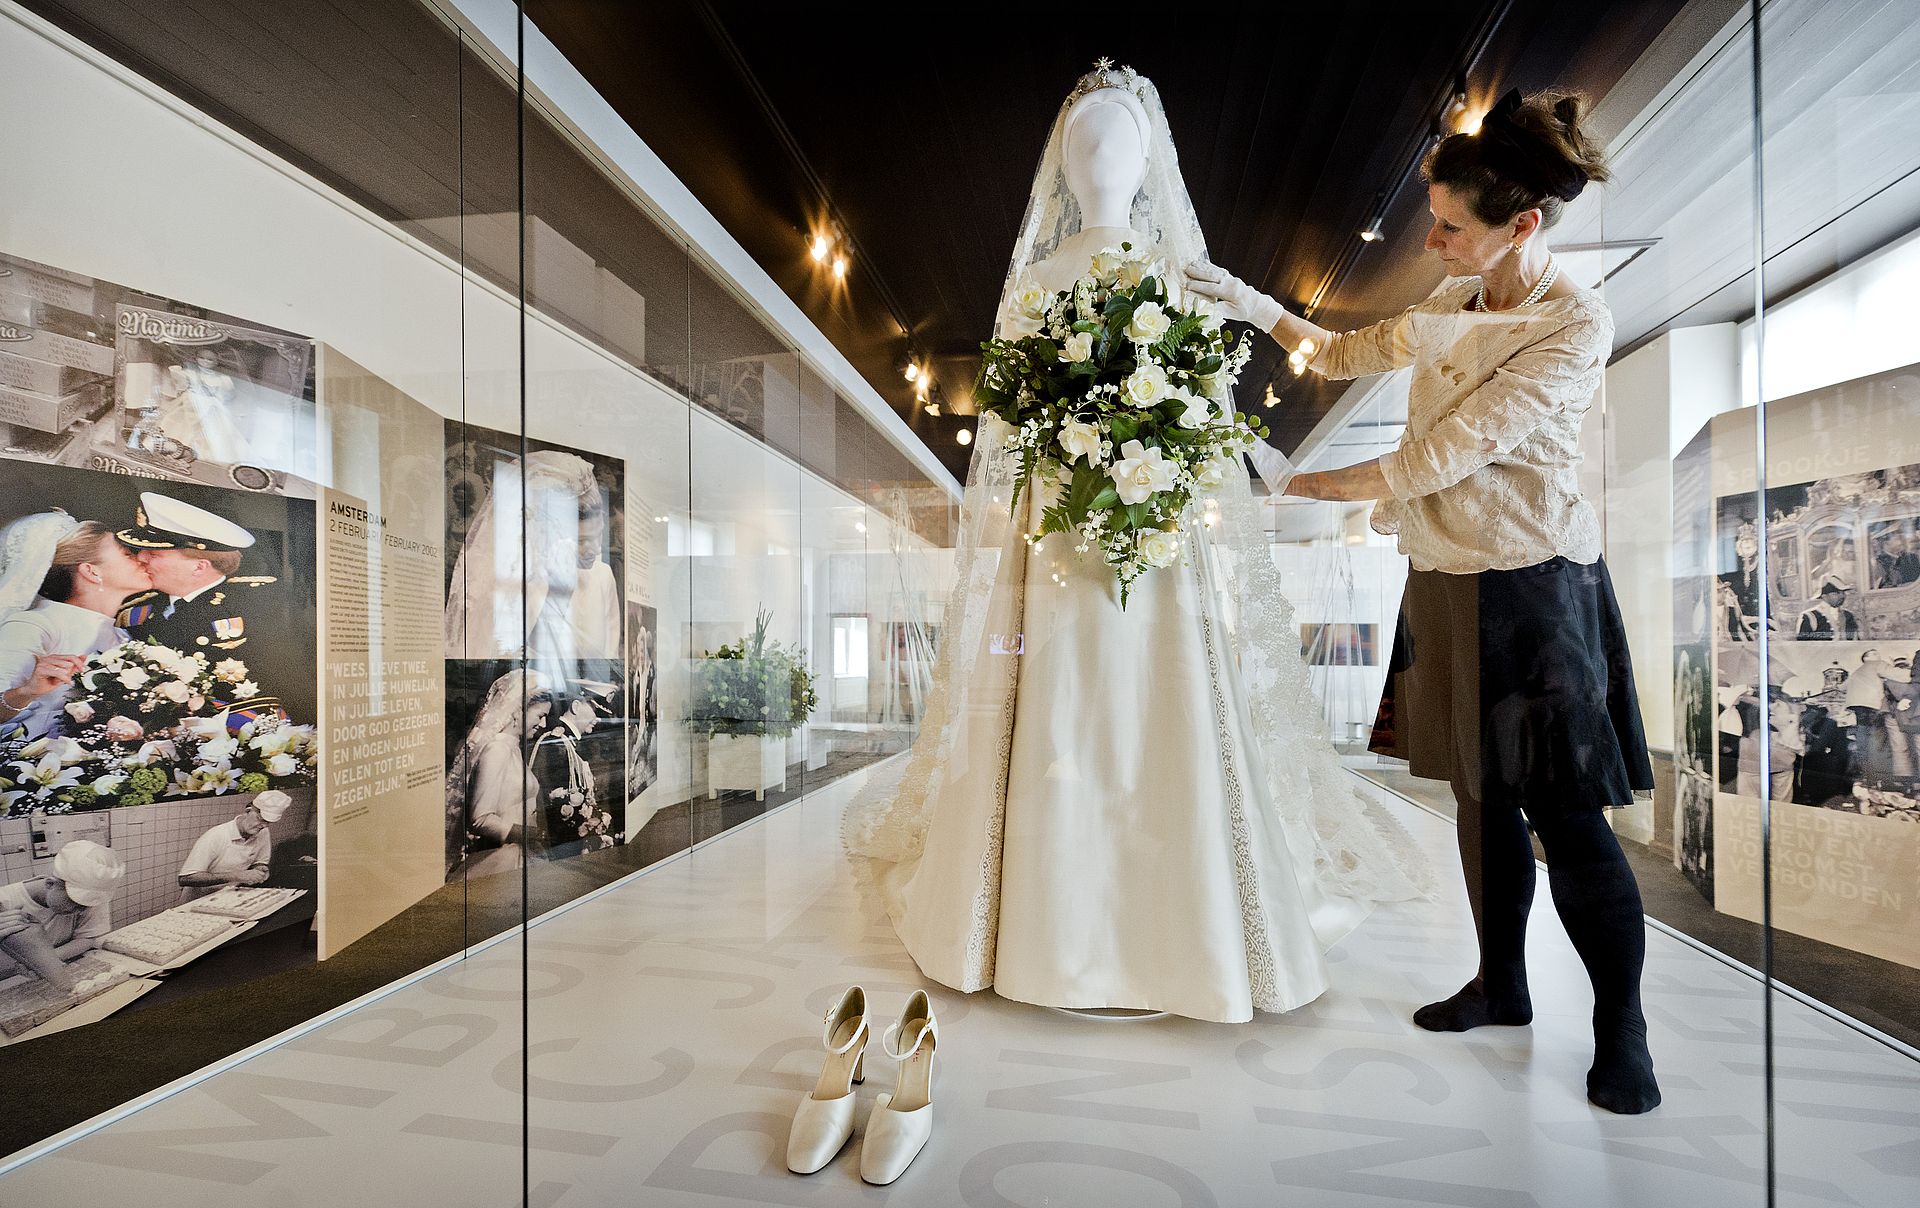 Ook de trouwjurk van koningin Máxima werd tentoongesteld.